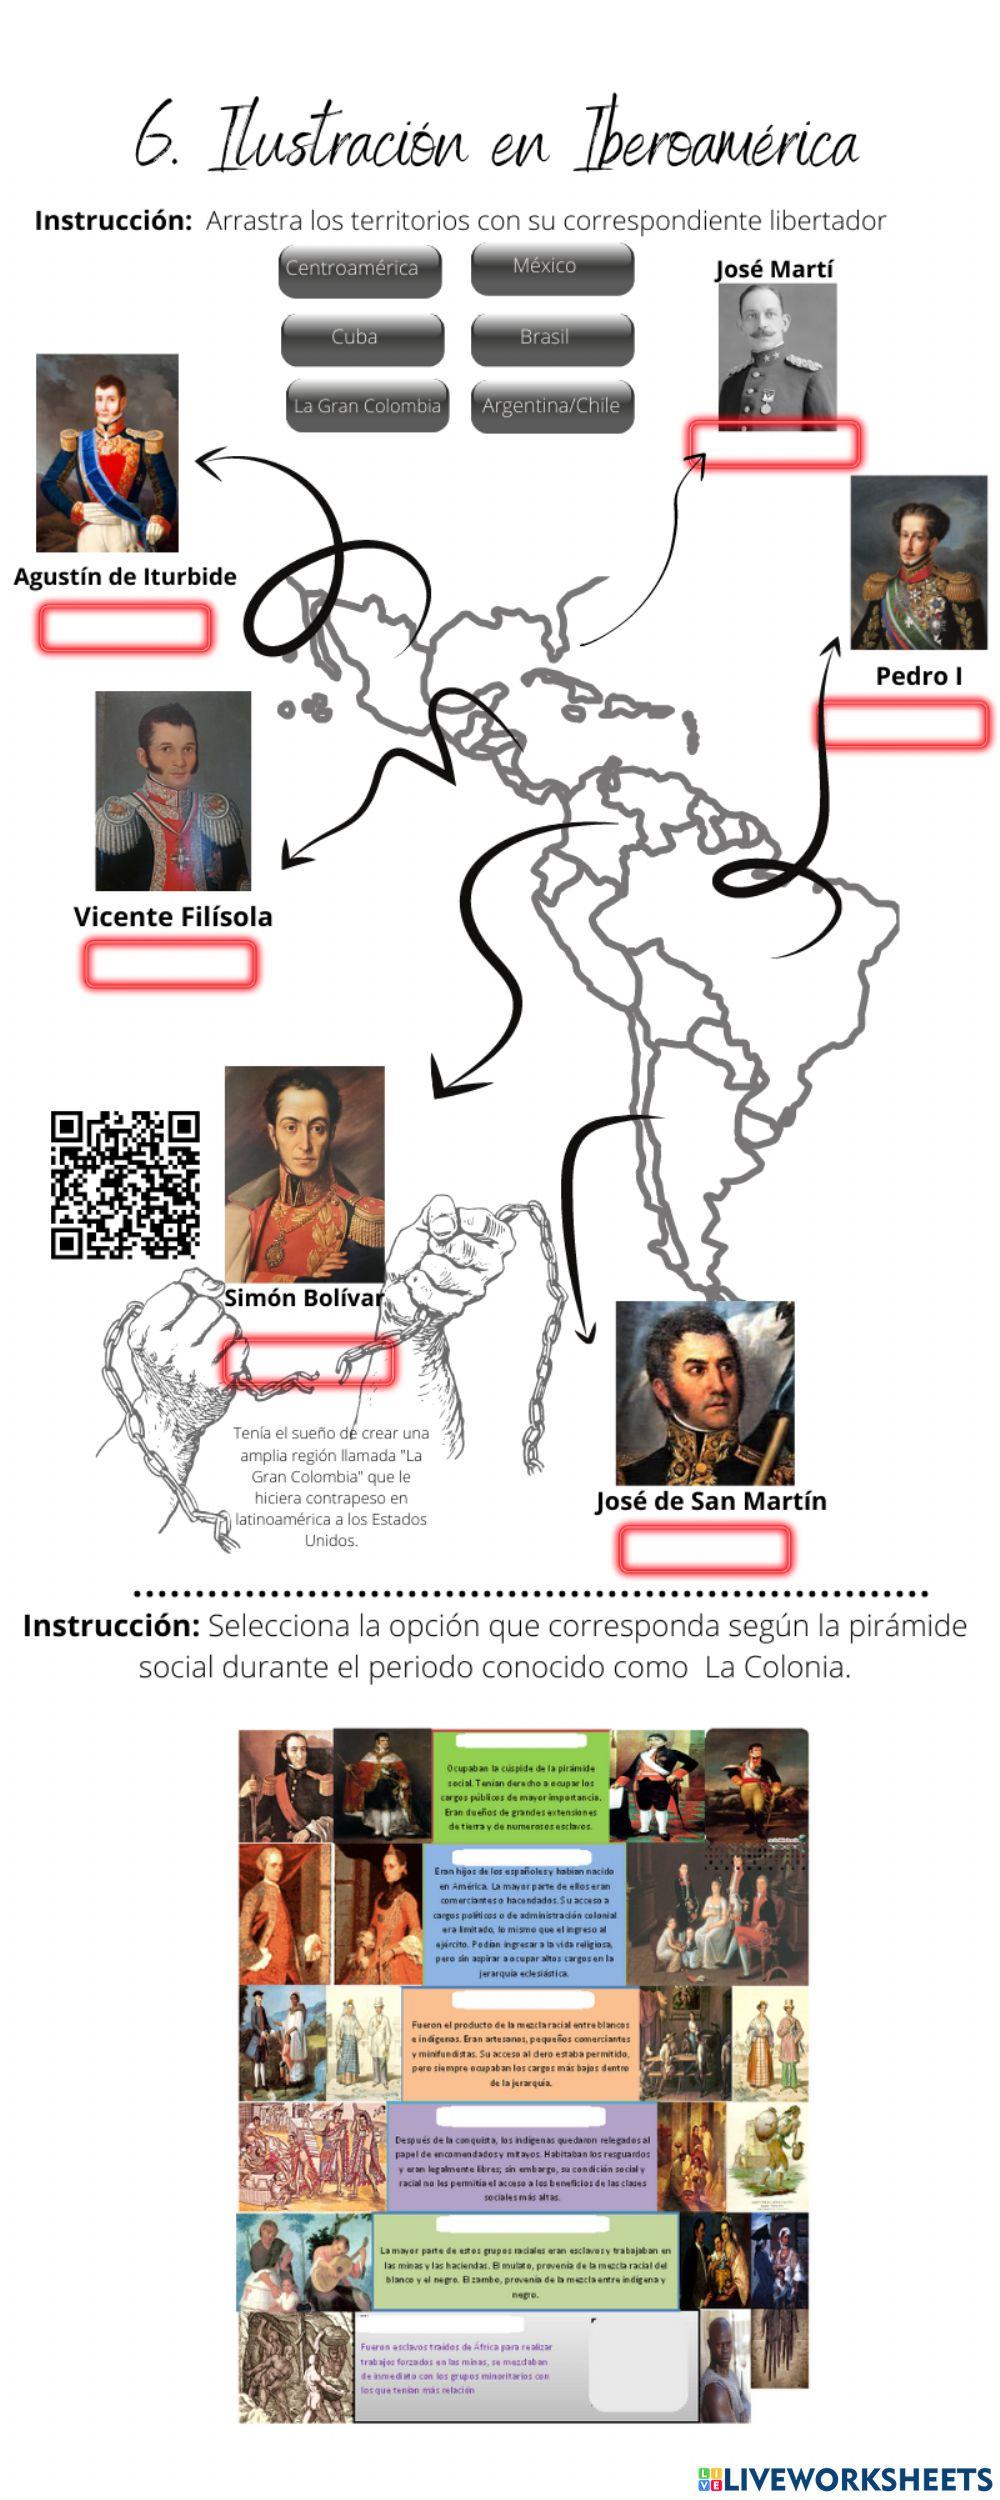 6. Ilustración en Iberoamérica